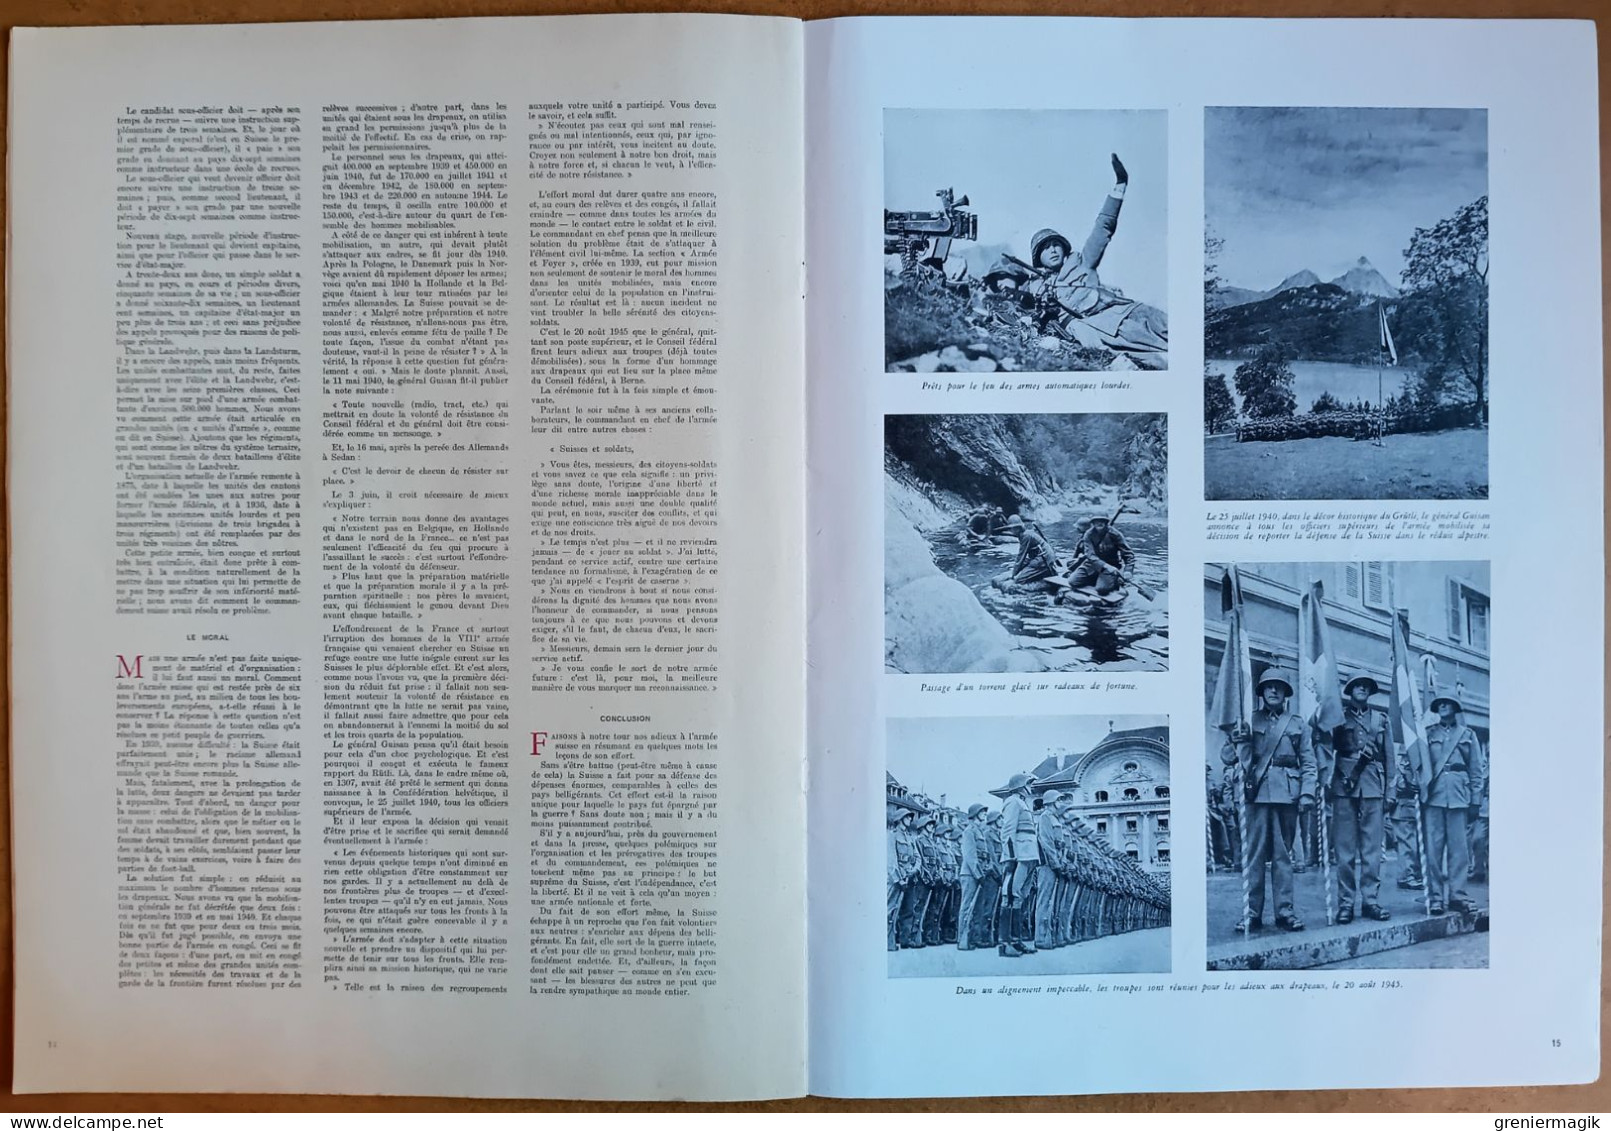 France Illustration N°66 04/01/1947 Indochine/La Suisse face aux guerres/Palestine (Nahalal)/Langevin/Electricité